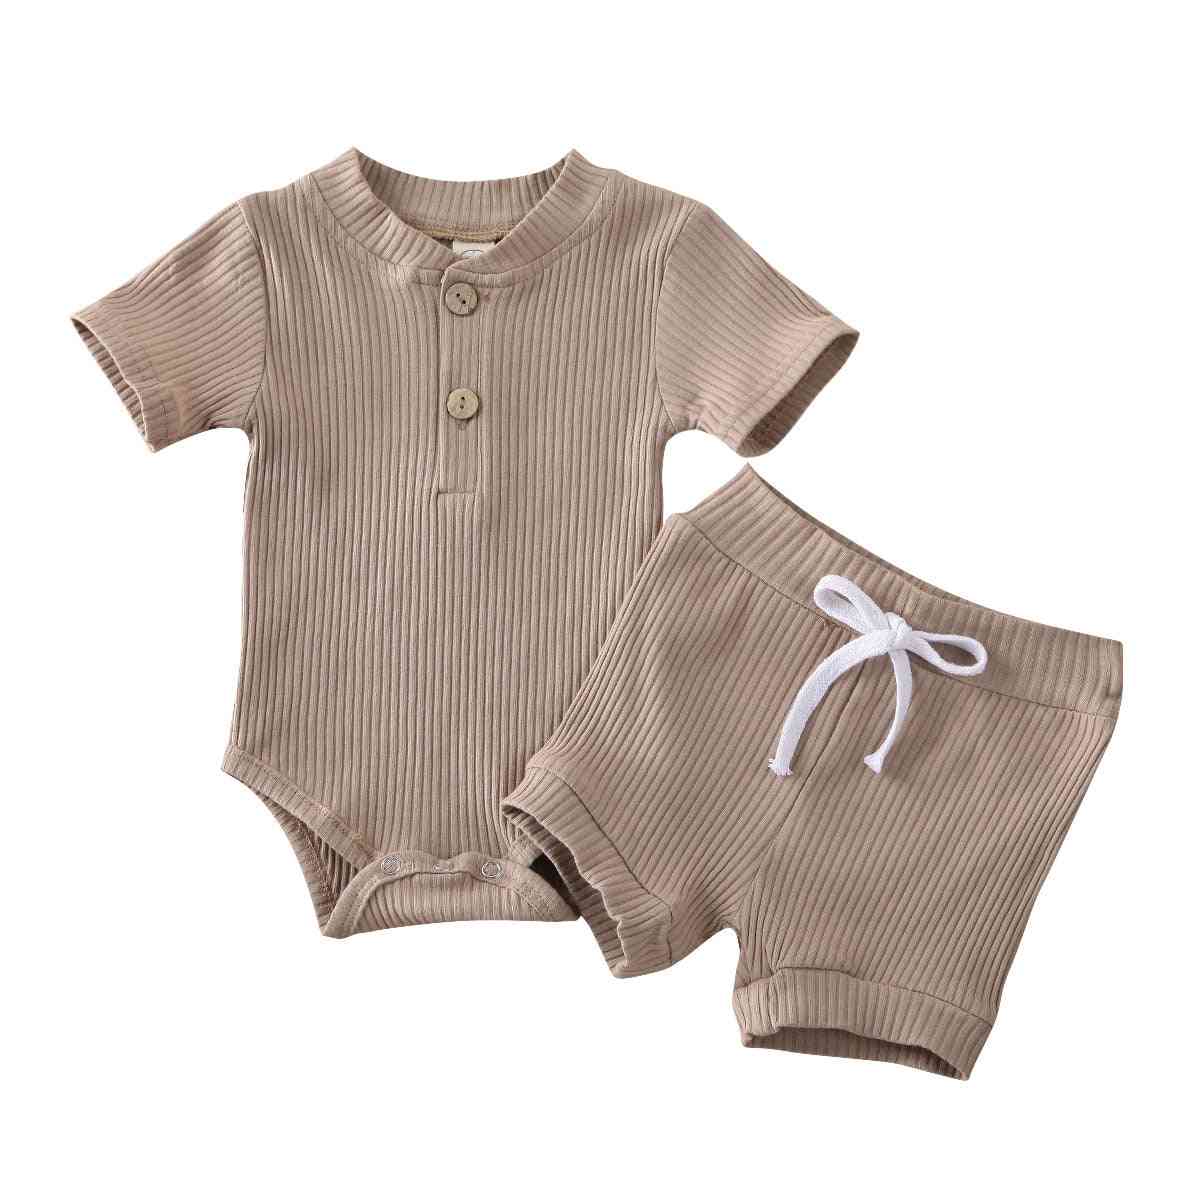 בגדי קיץ לתינוק, שרוול קצר, תלבושות בגד גוף לילדים - כחול 1/6 מטר